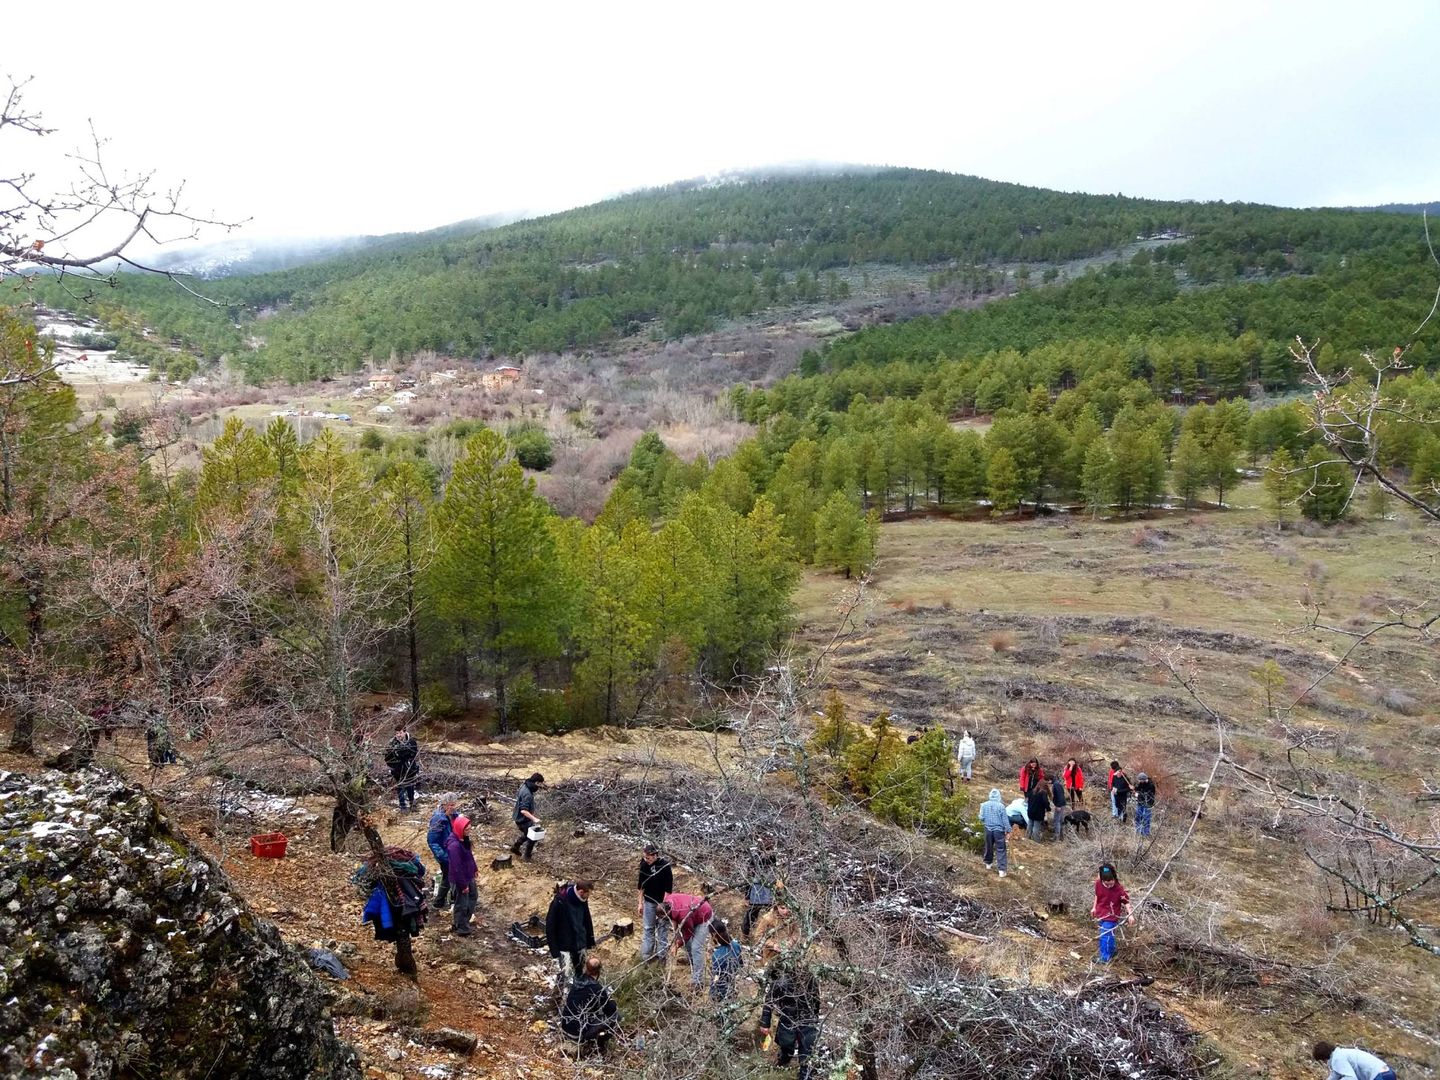 Reforestación en el entorno de Fraguas, monte público protegido por la Junta de Castilla-La Mancha.